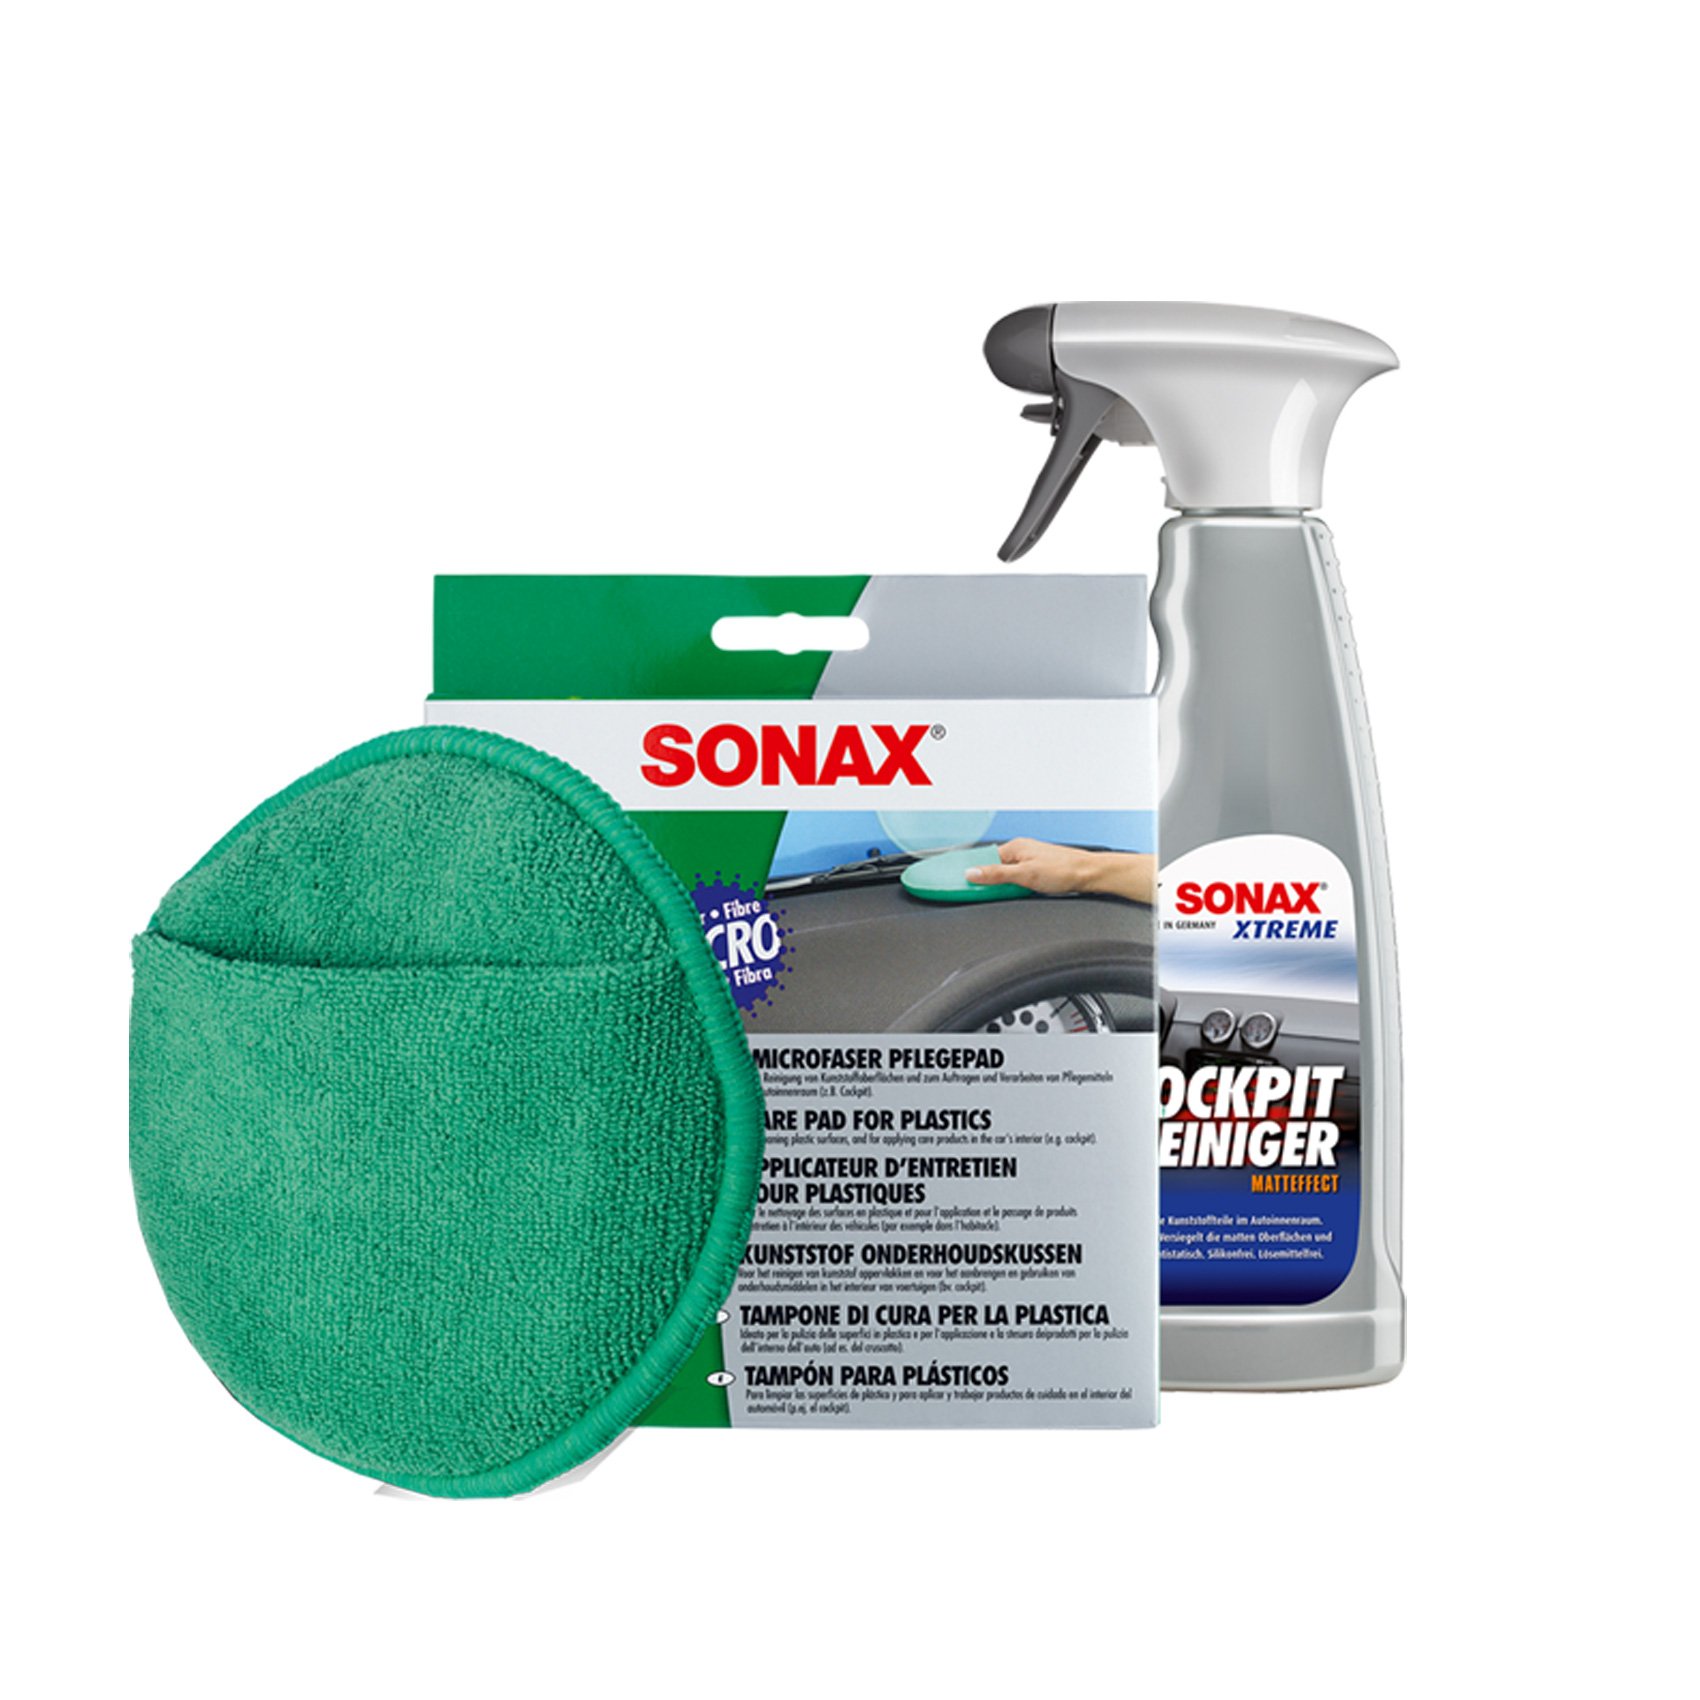 MICROFASER Pflege PAD Schwamm + COCKPITPFLEGER MATTEFFECT Spray Set von SONAX